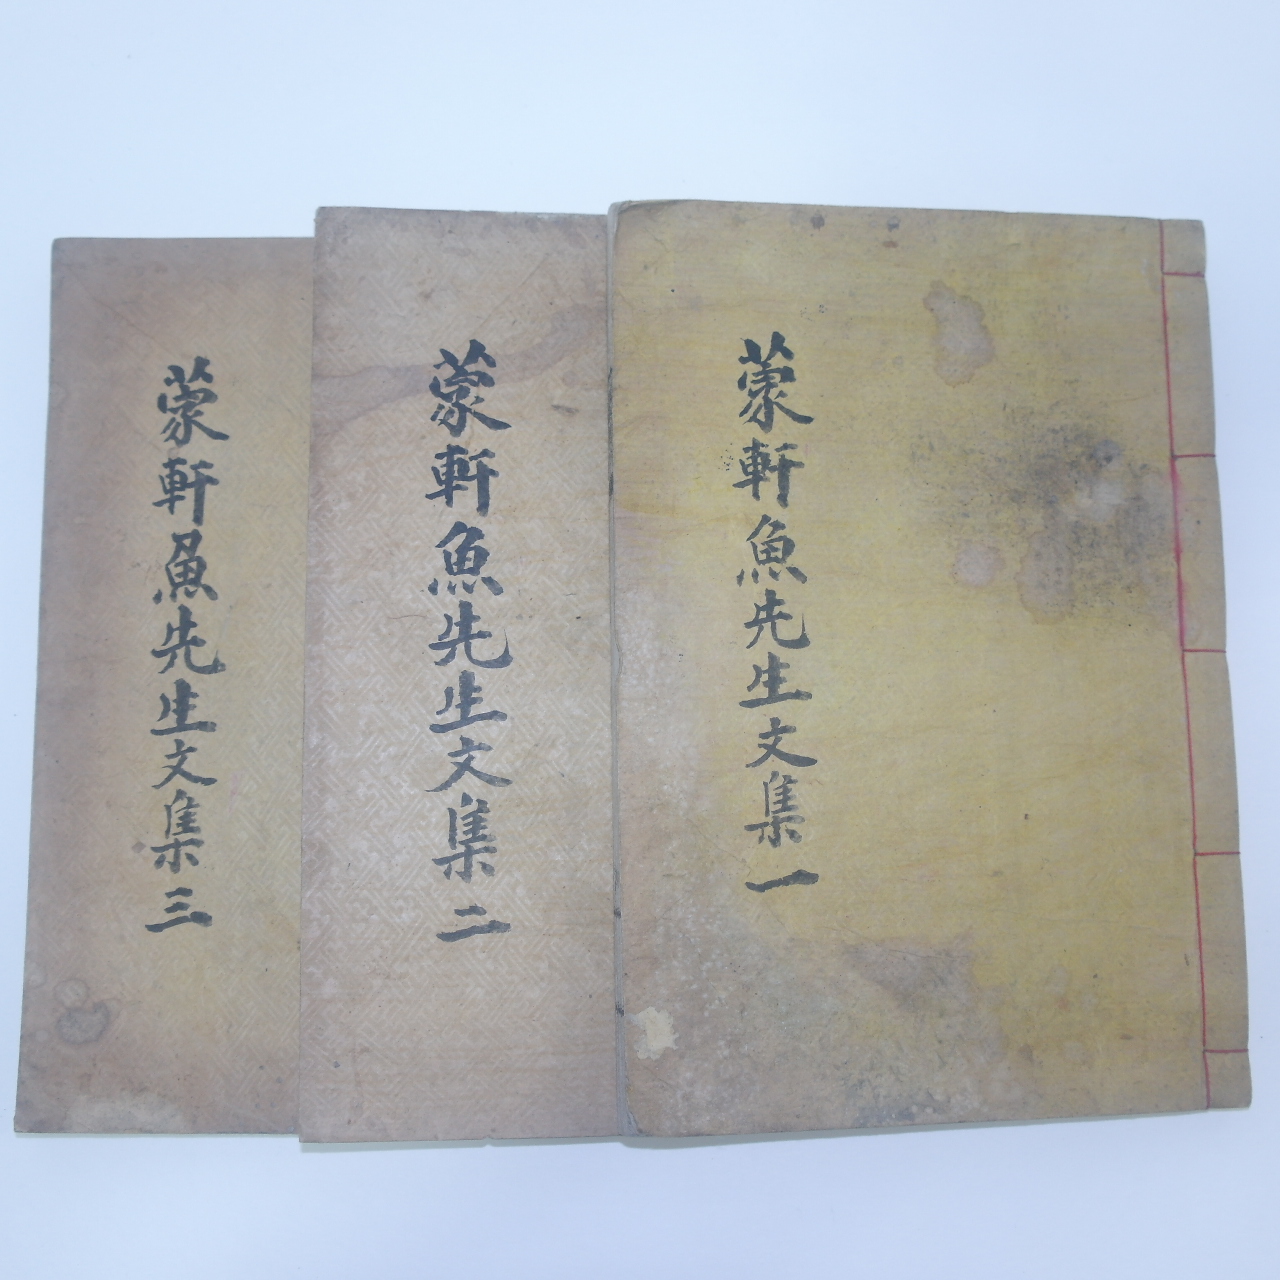 1932년간행 어재원(魚在源) 몽헌유고(蒙軒遺稿) 6권3책완질